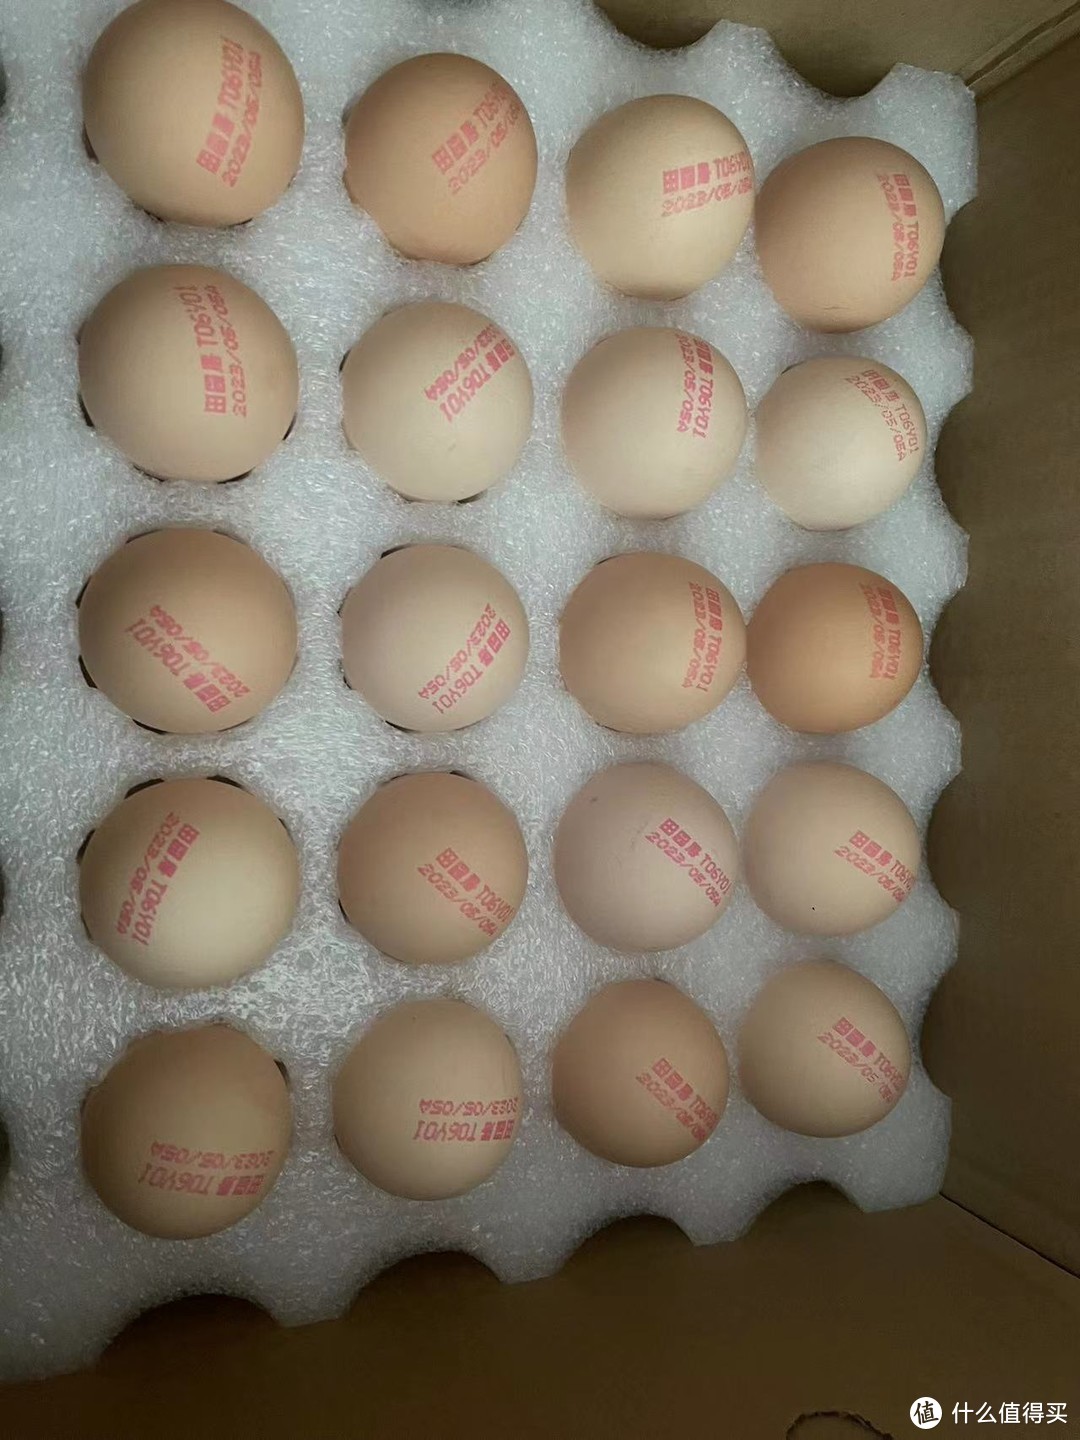 收到银行送的鸡蛋有点小惊喜